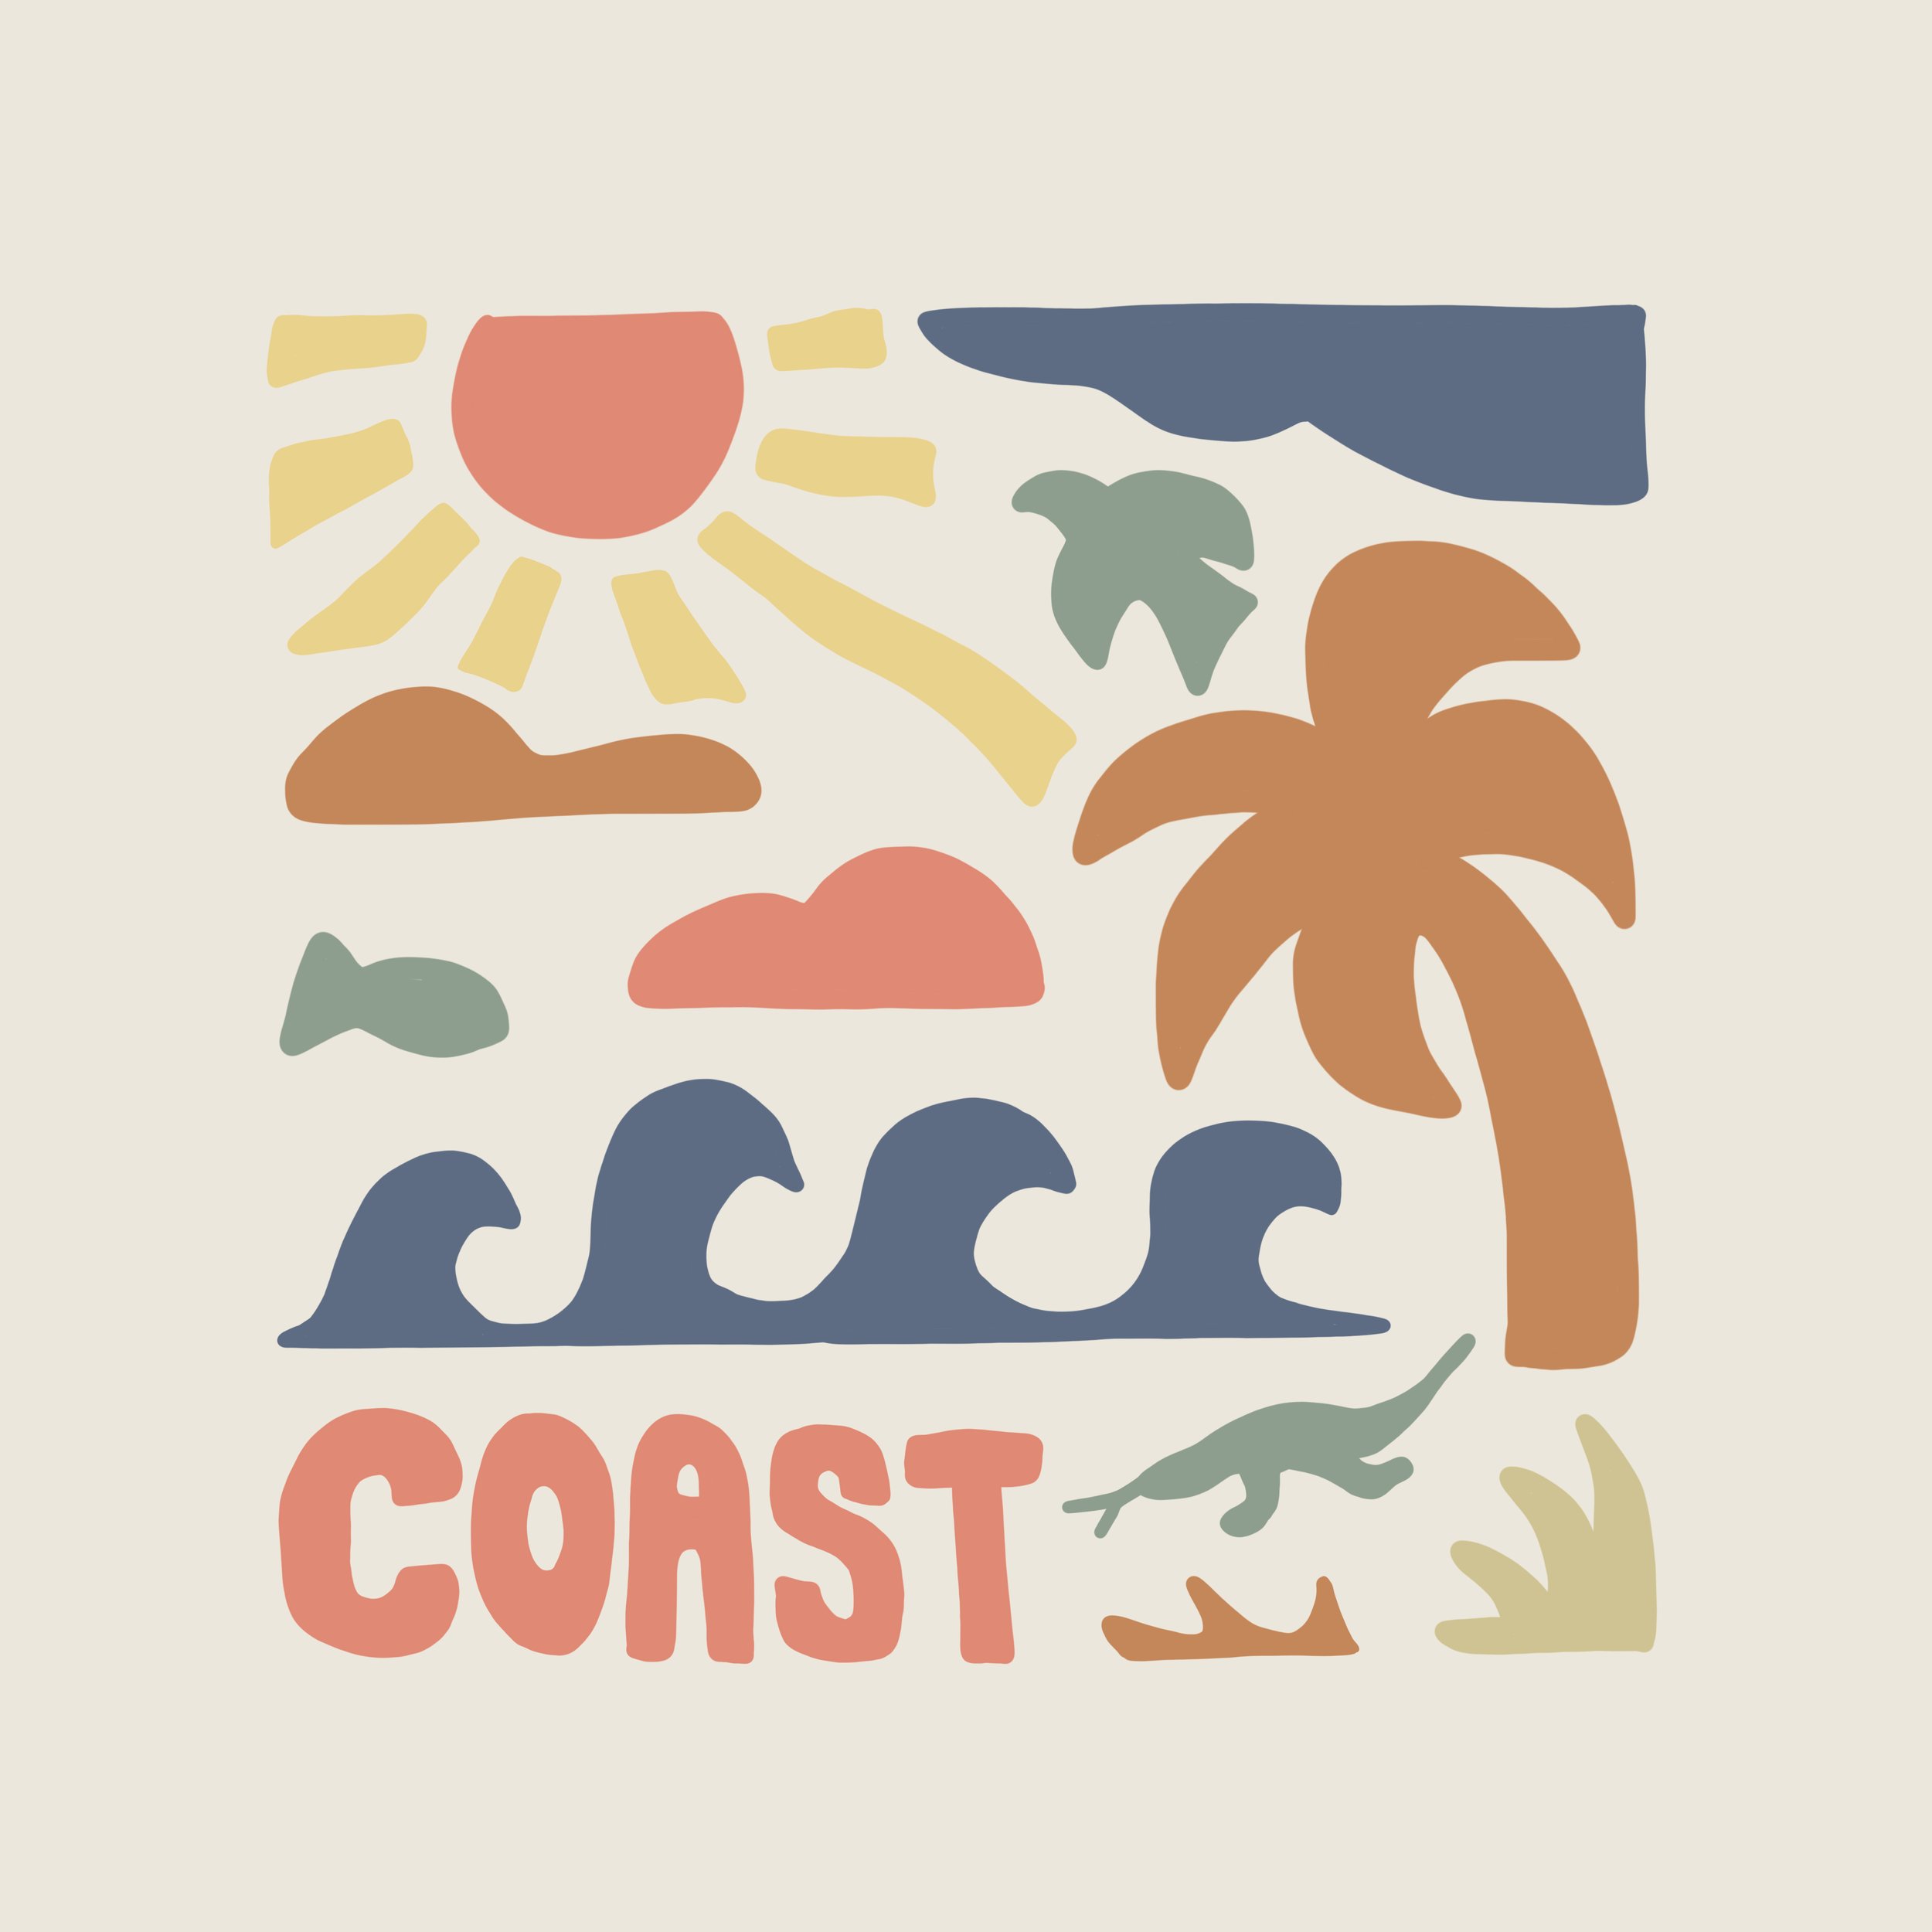 Coast_Abstract.jpg